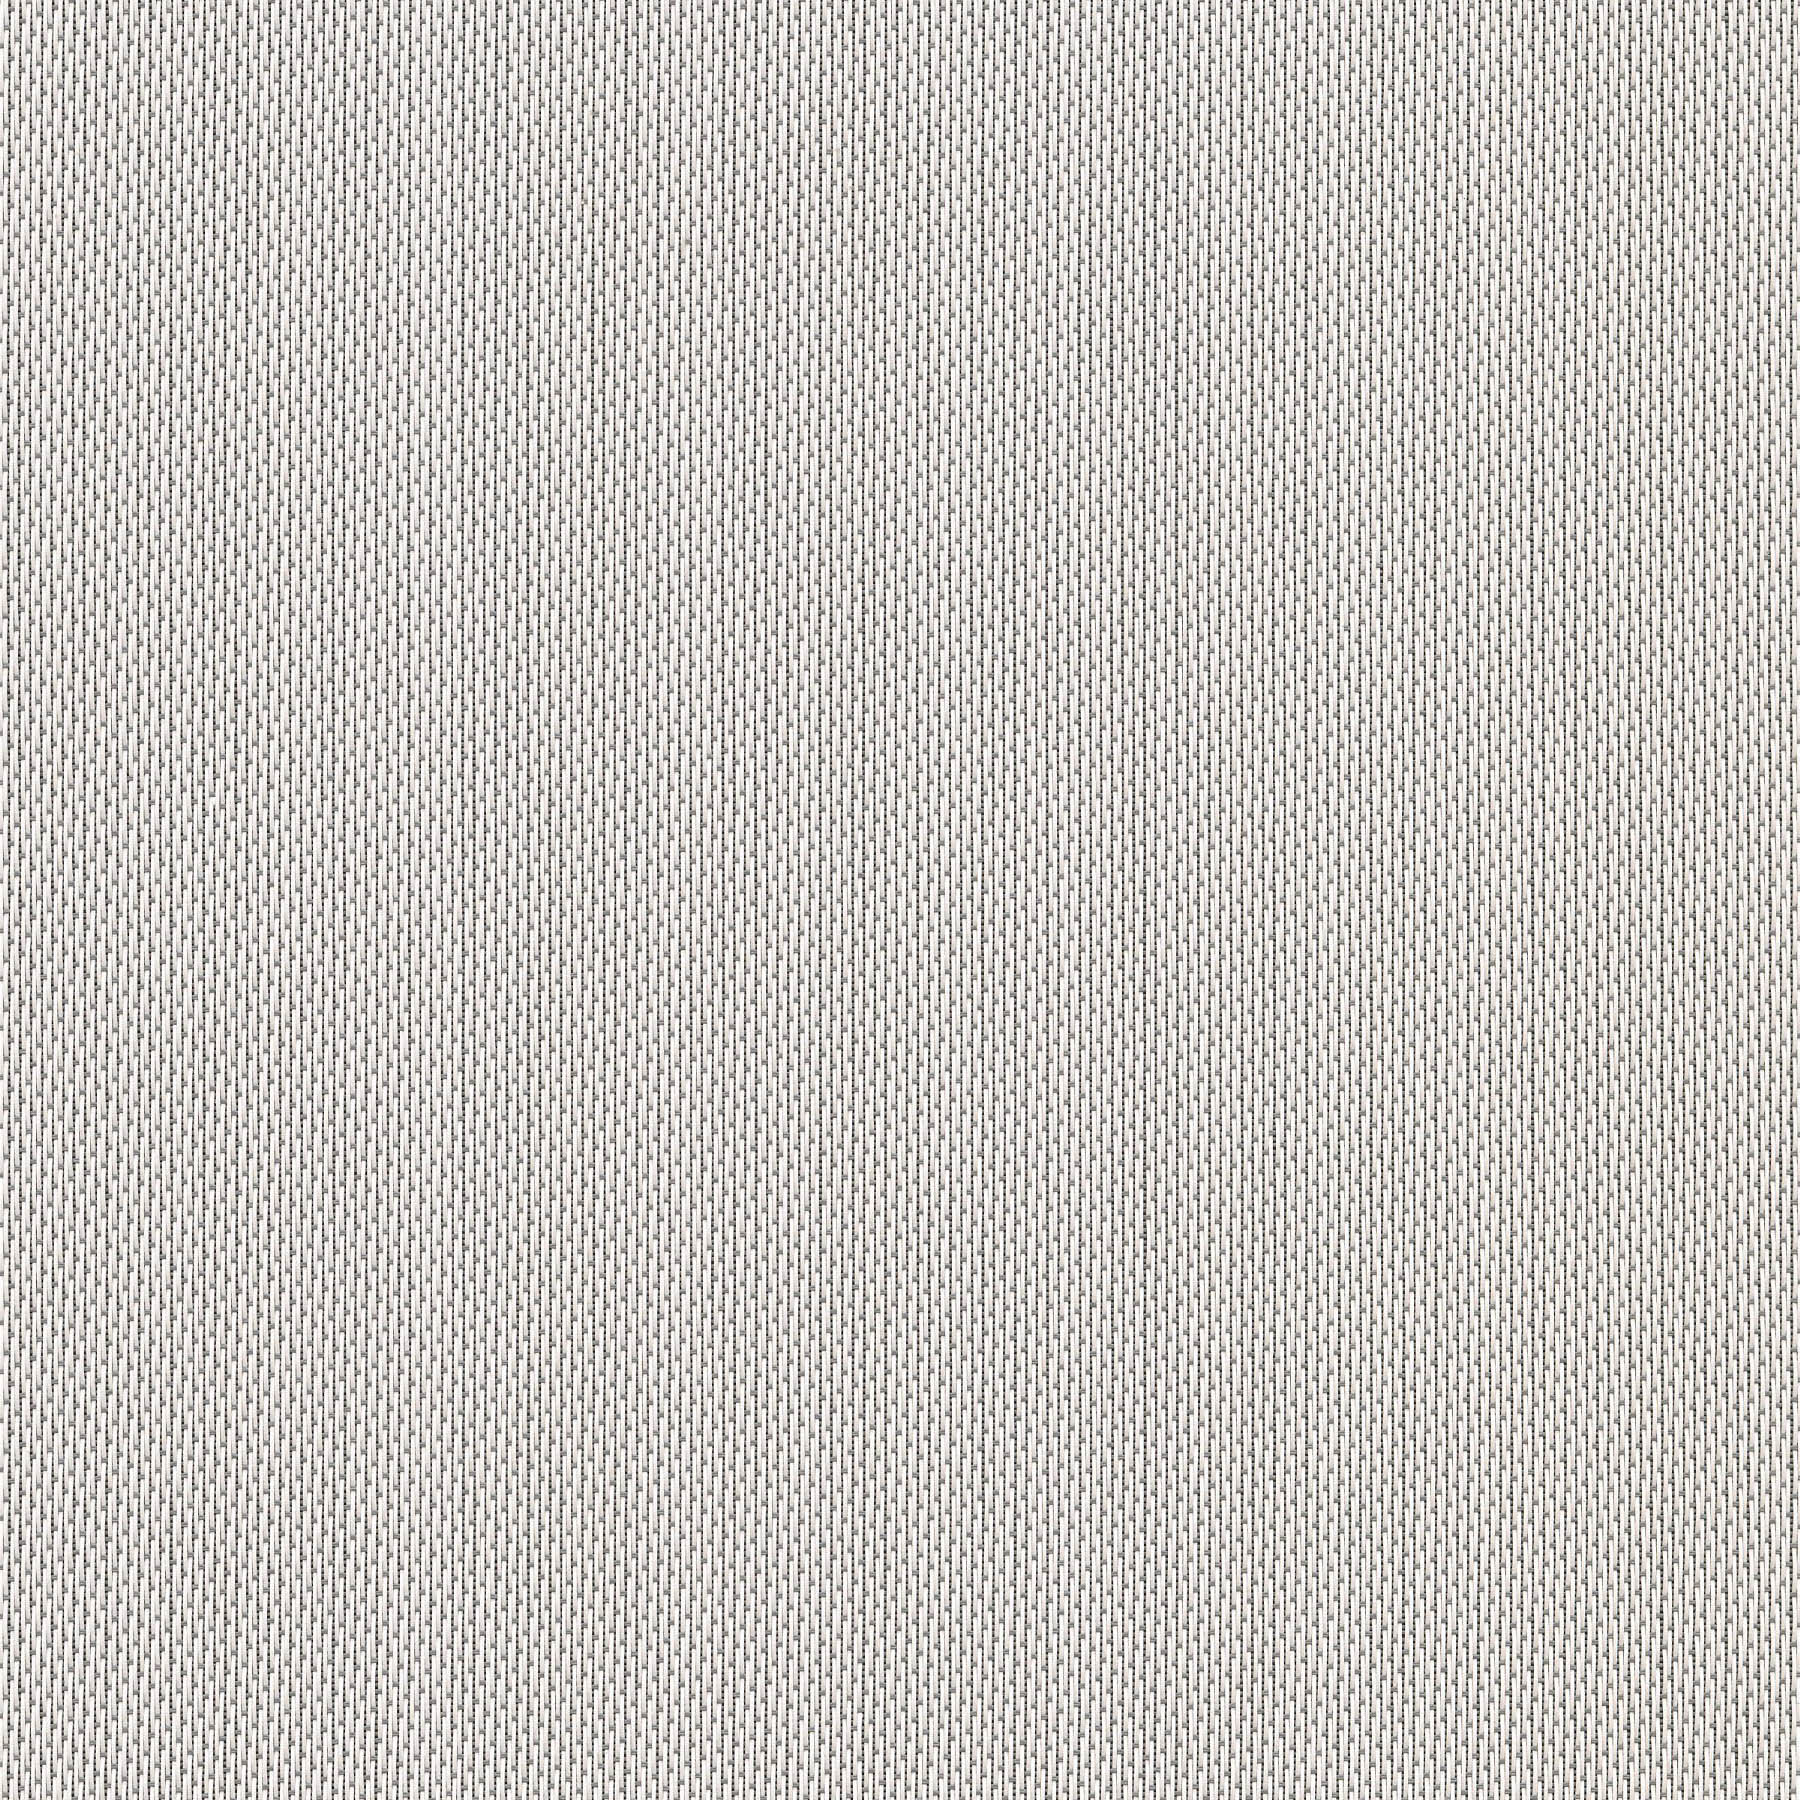 Altex - Fabric - SHEERWEAVE 2705 - Grey/White - 173